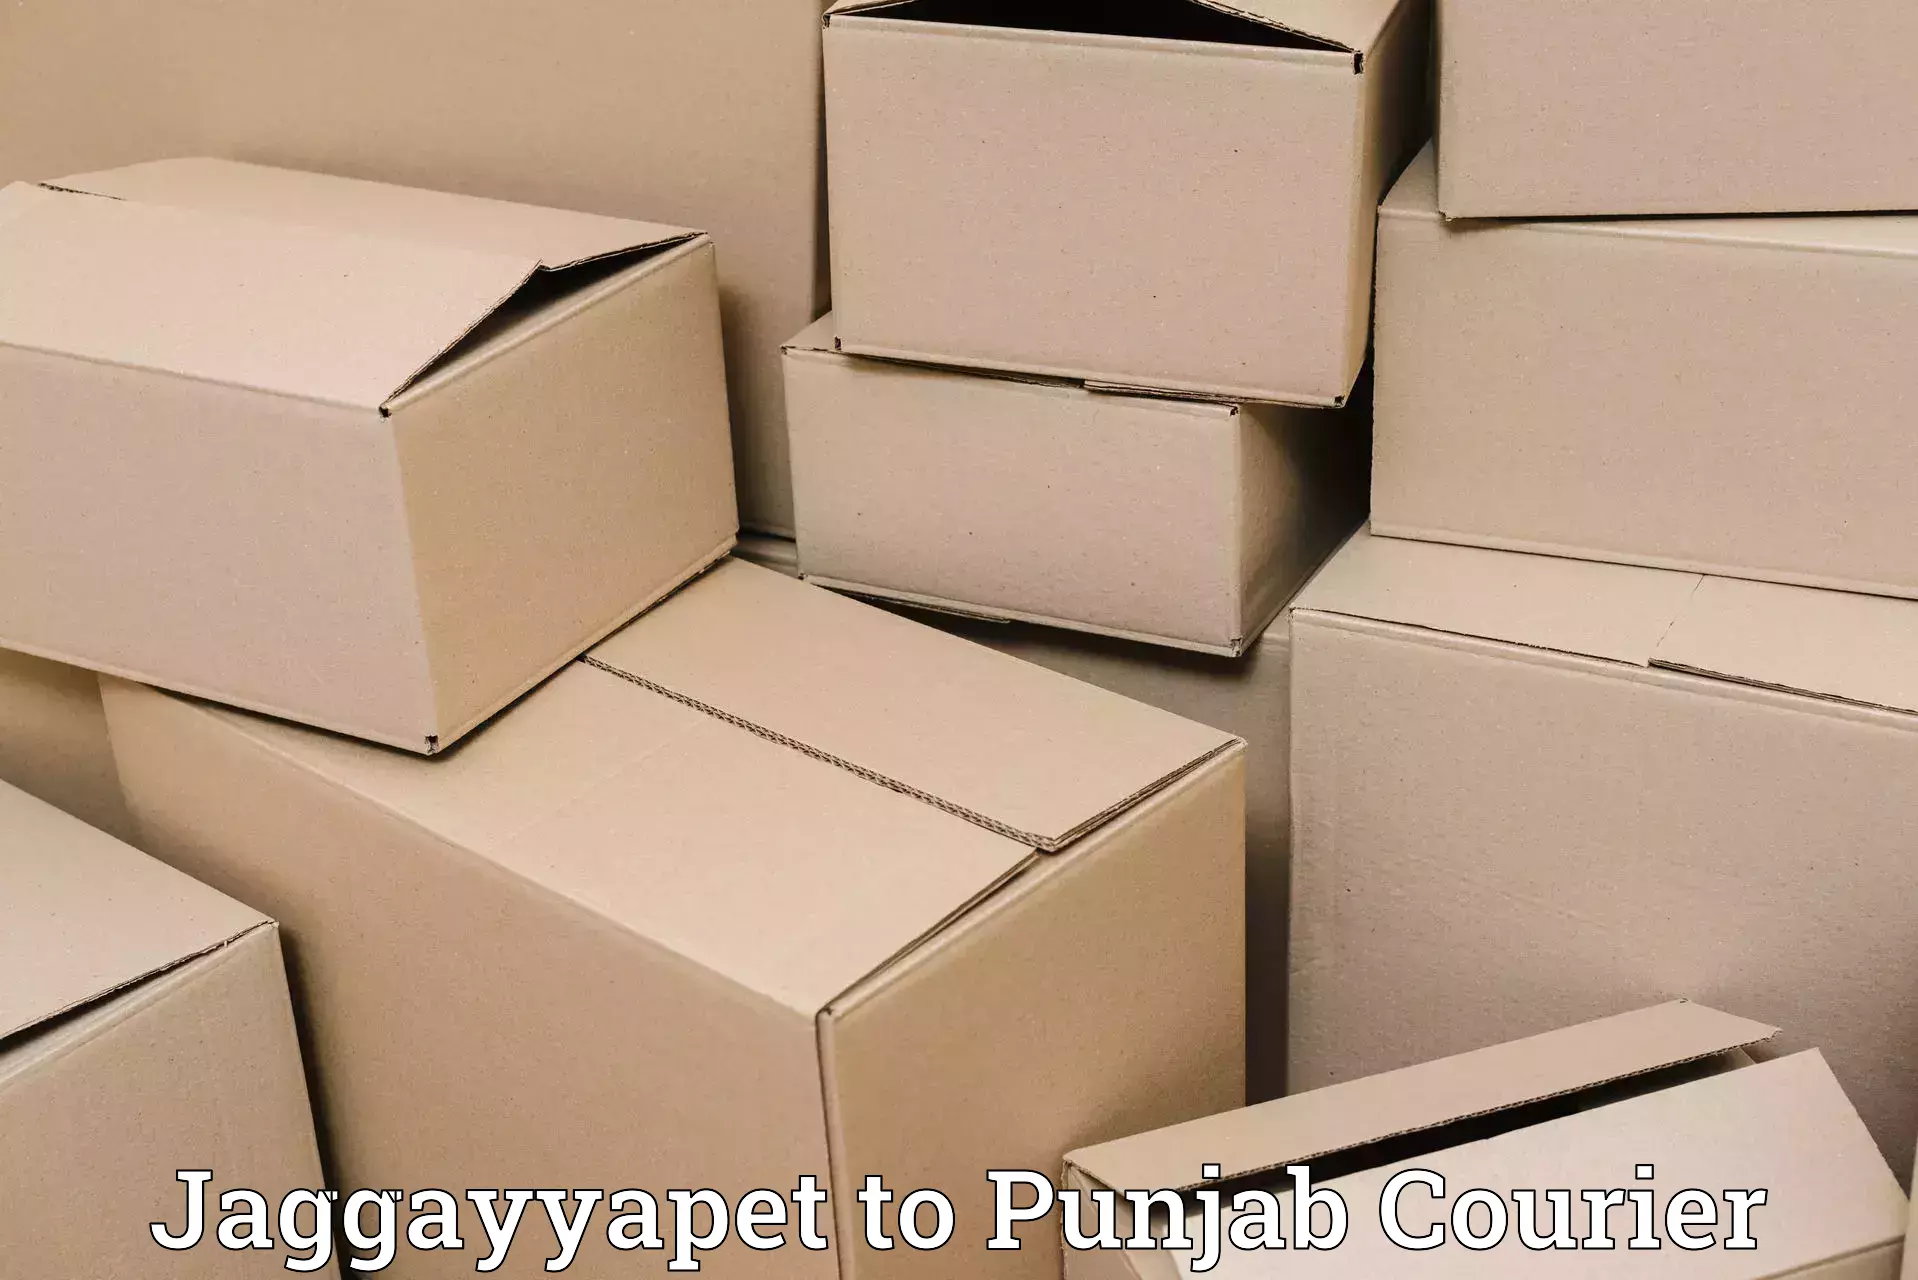 Business shipping needs Jaggayyapet to Batala